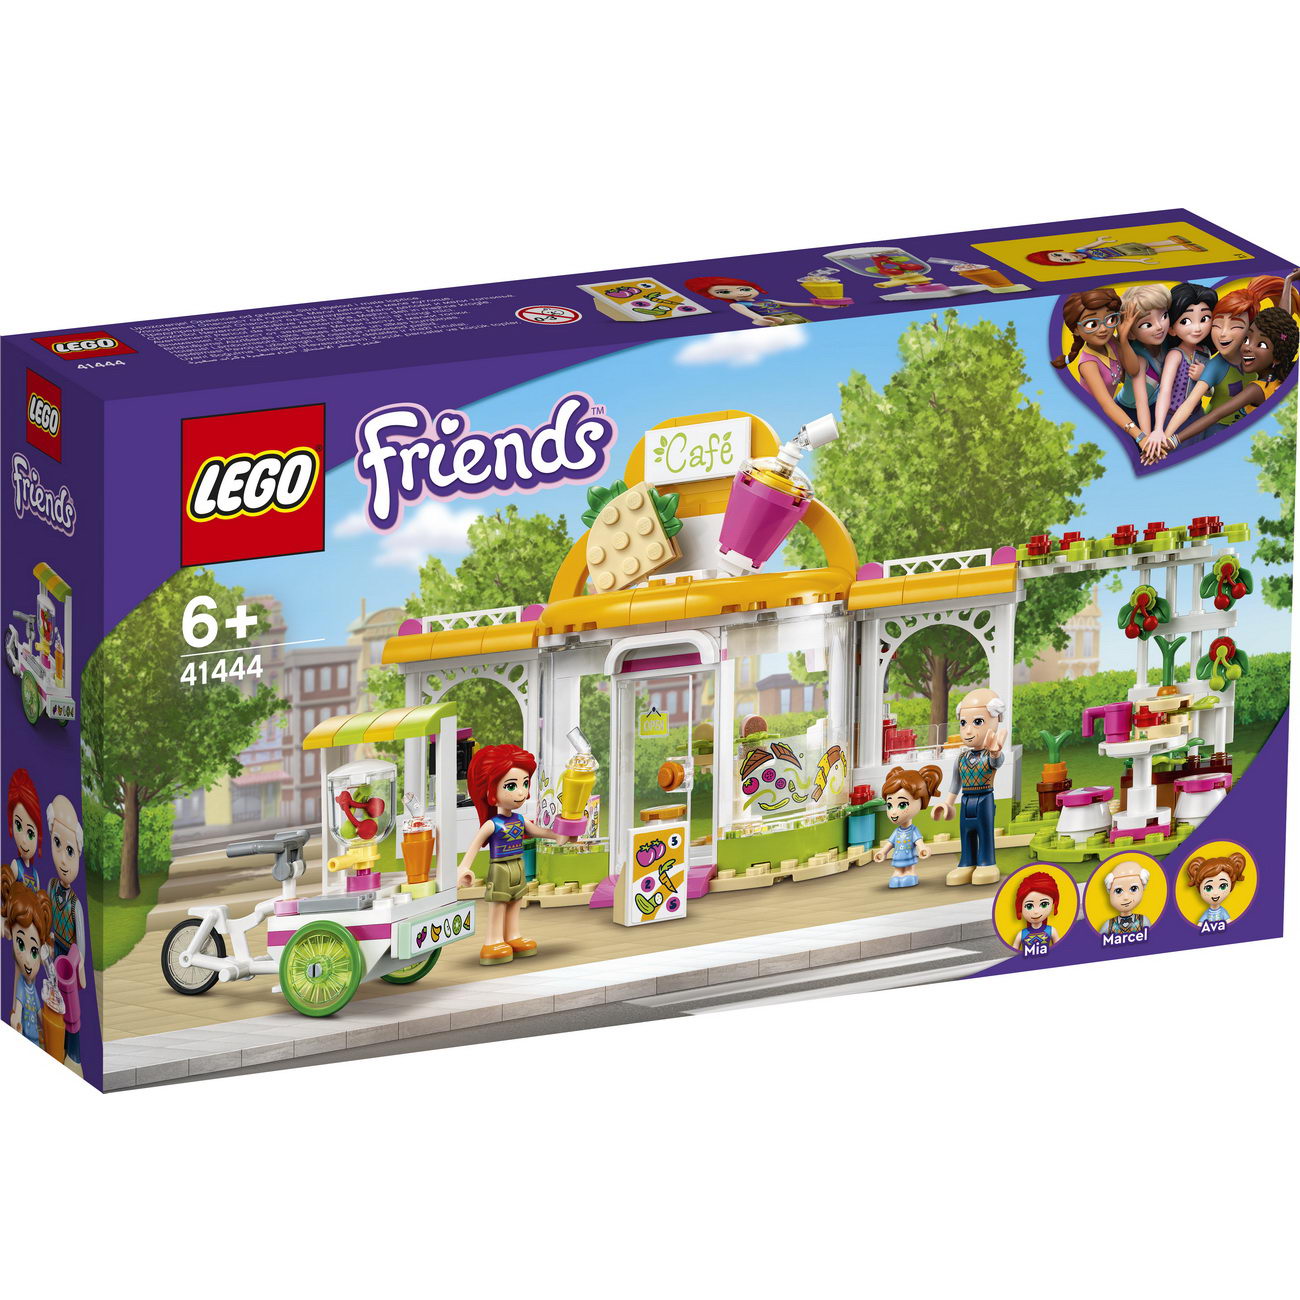 LEGO Friends 41444 - Heartlake City Bio-Café